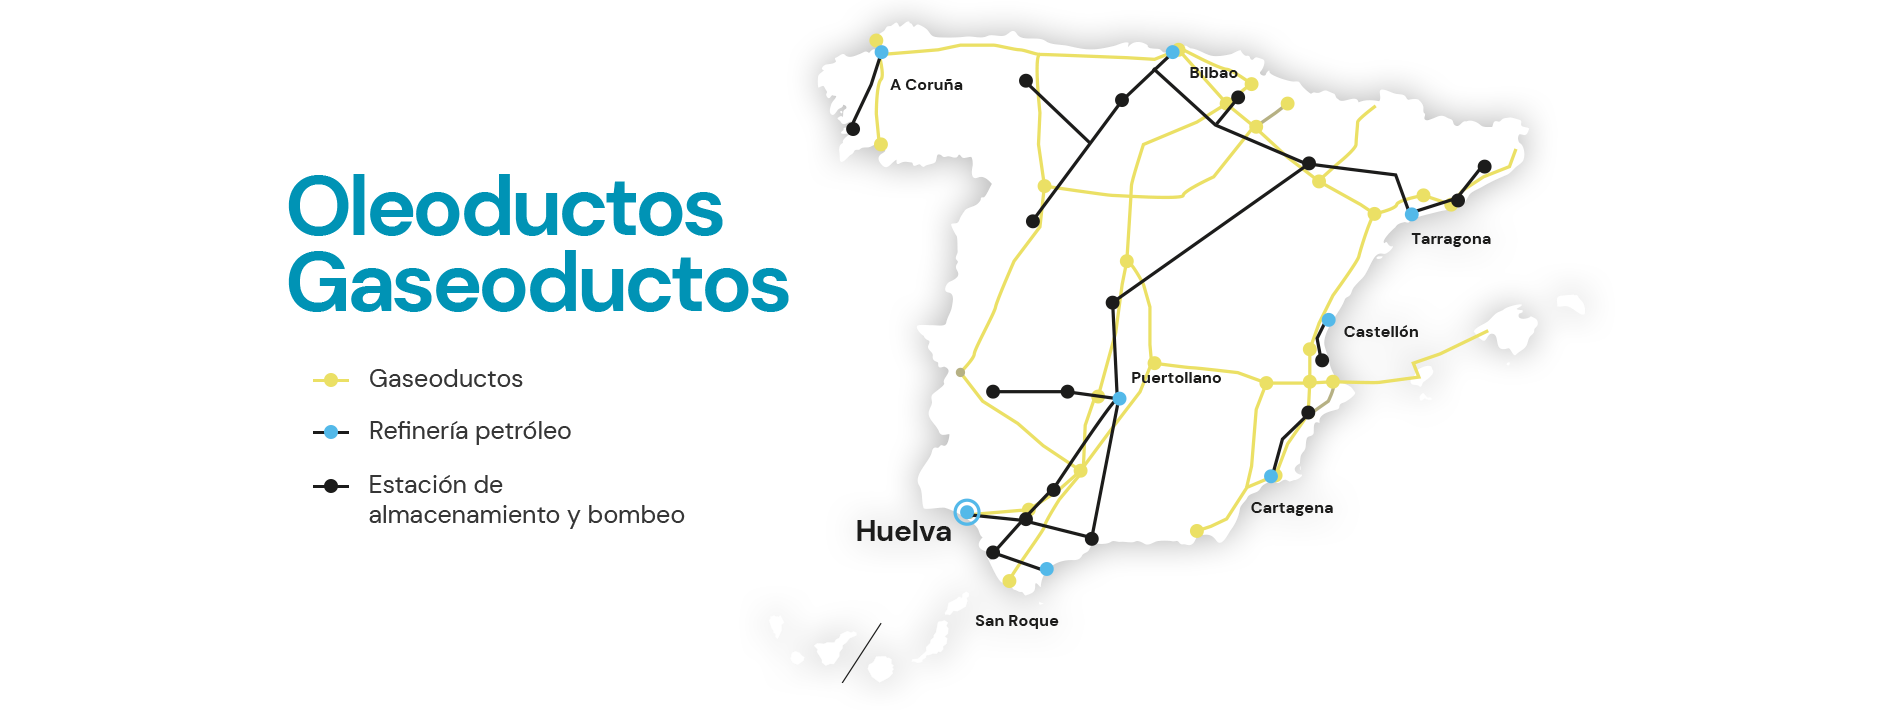 Mapa de oleoductos y gaseoductos